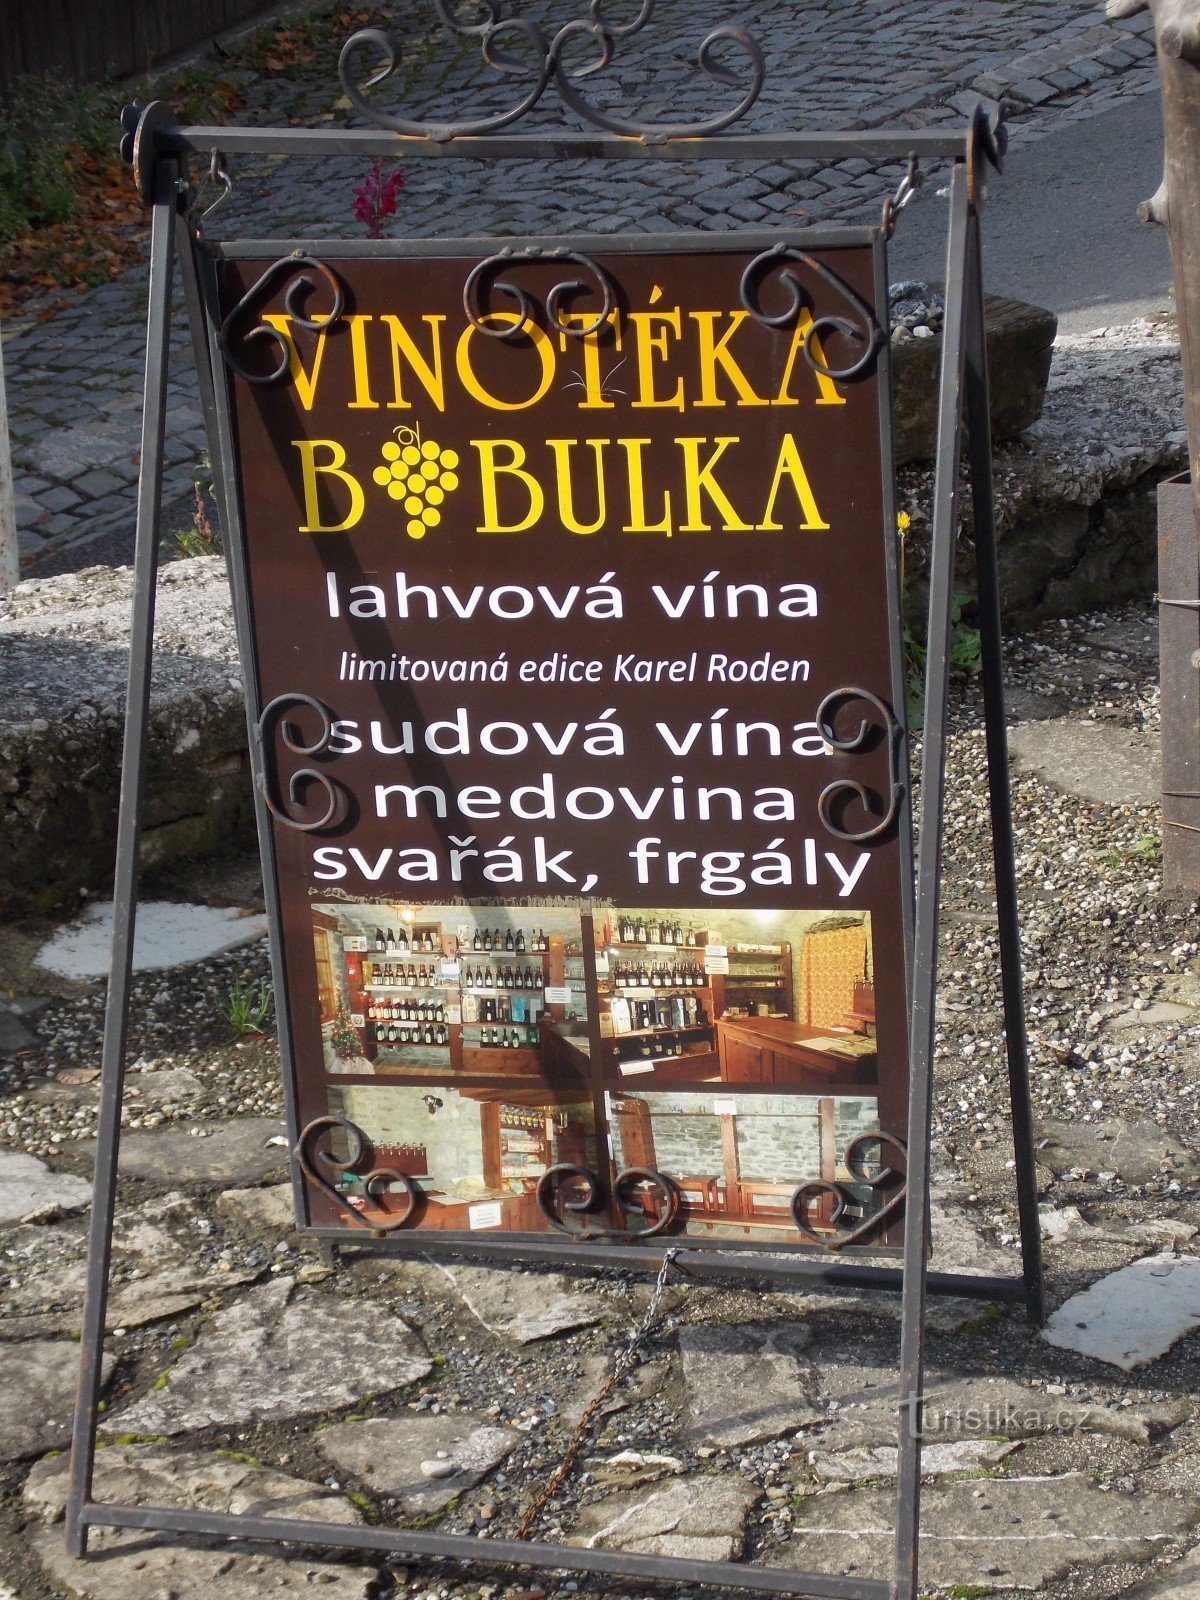 За хорошим вином йдіть у винний магазин Bobulka у Штрамберку